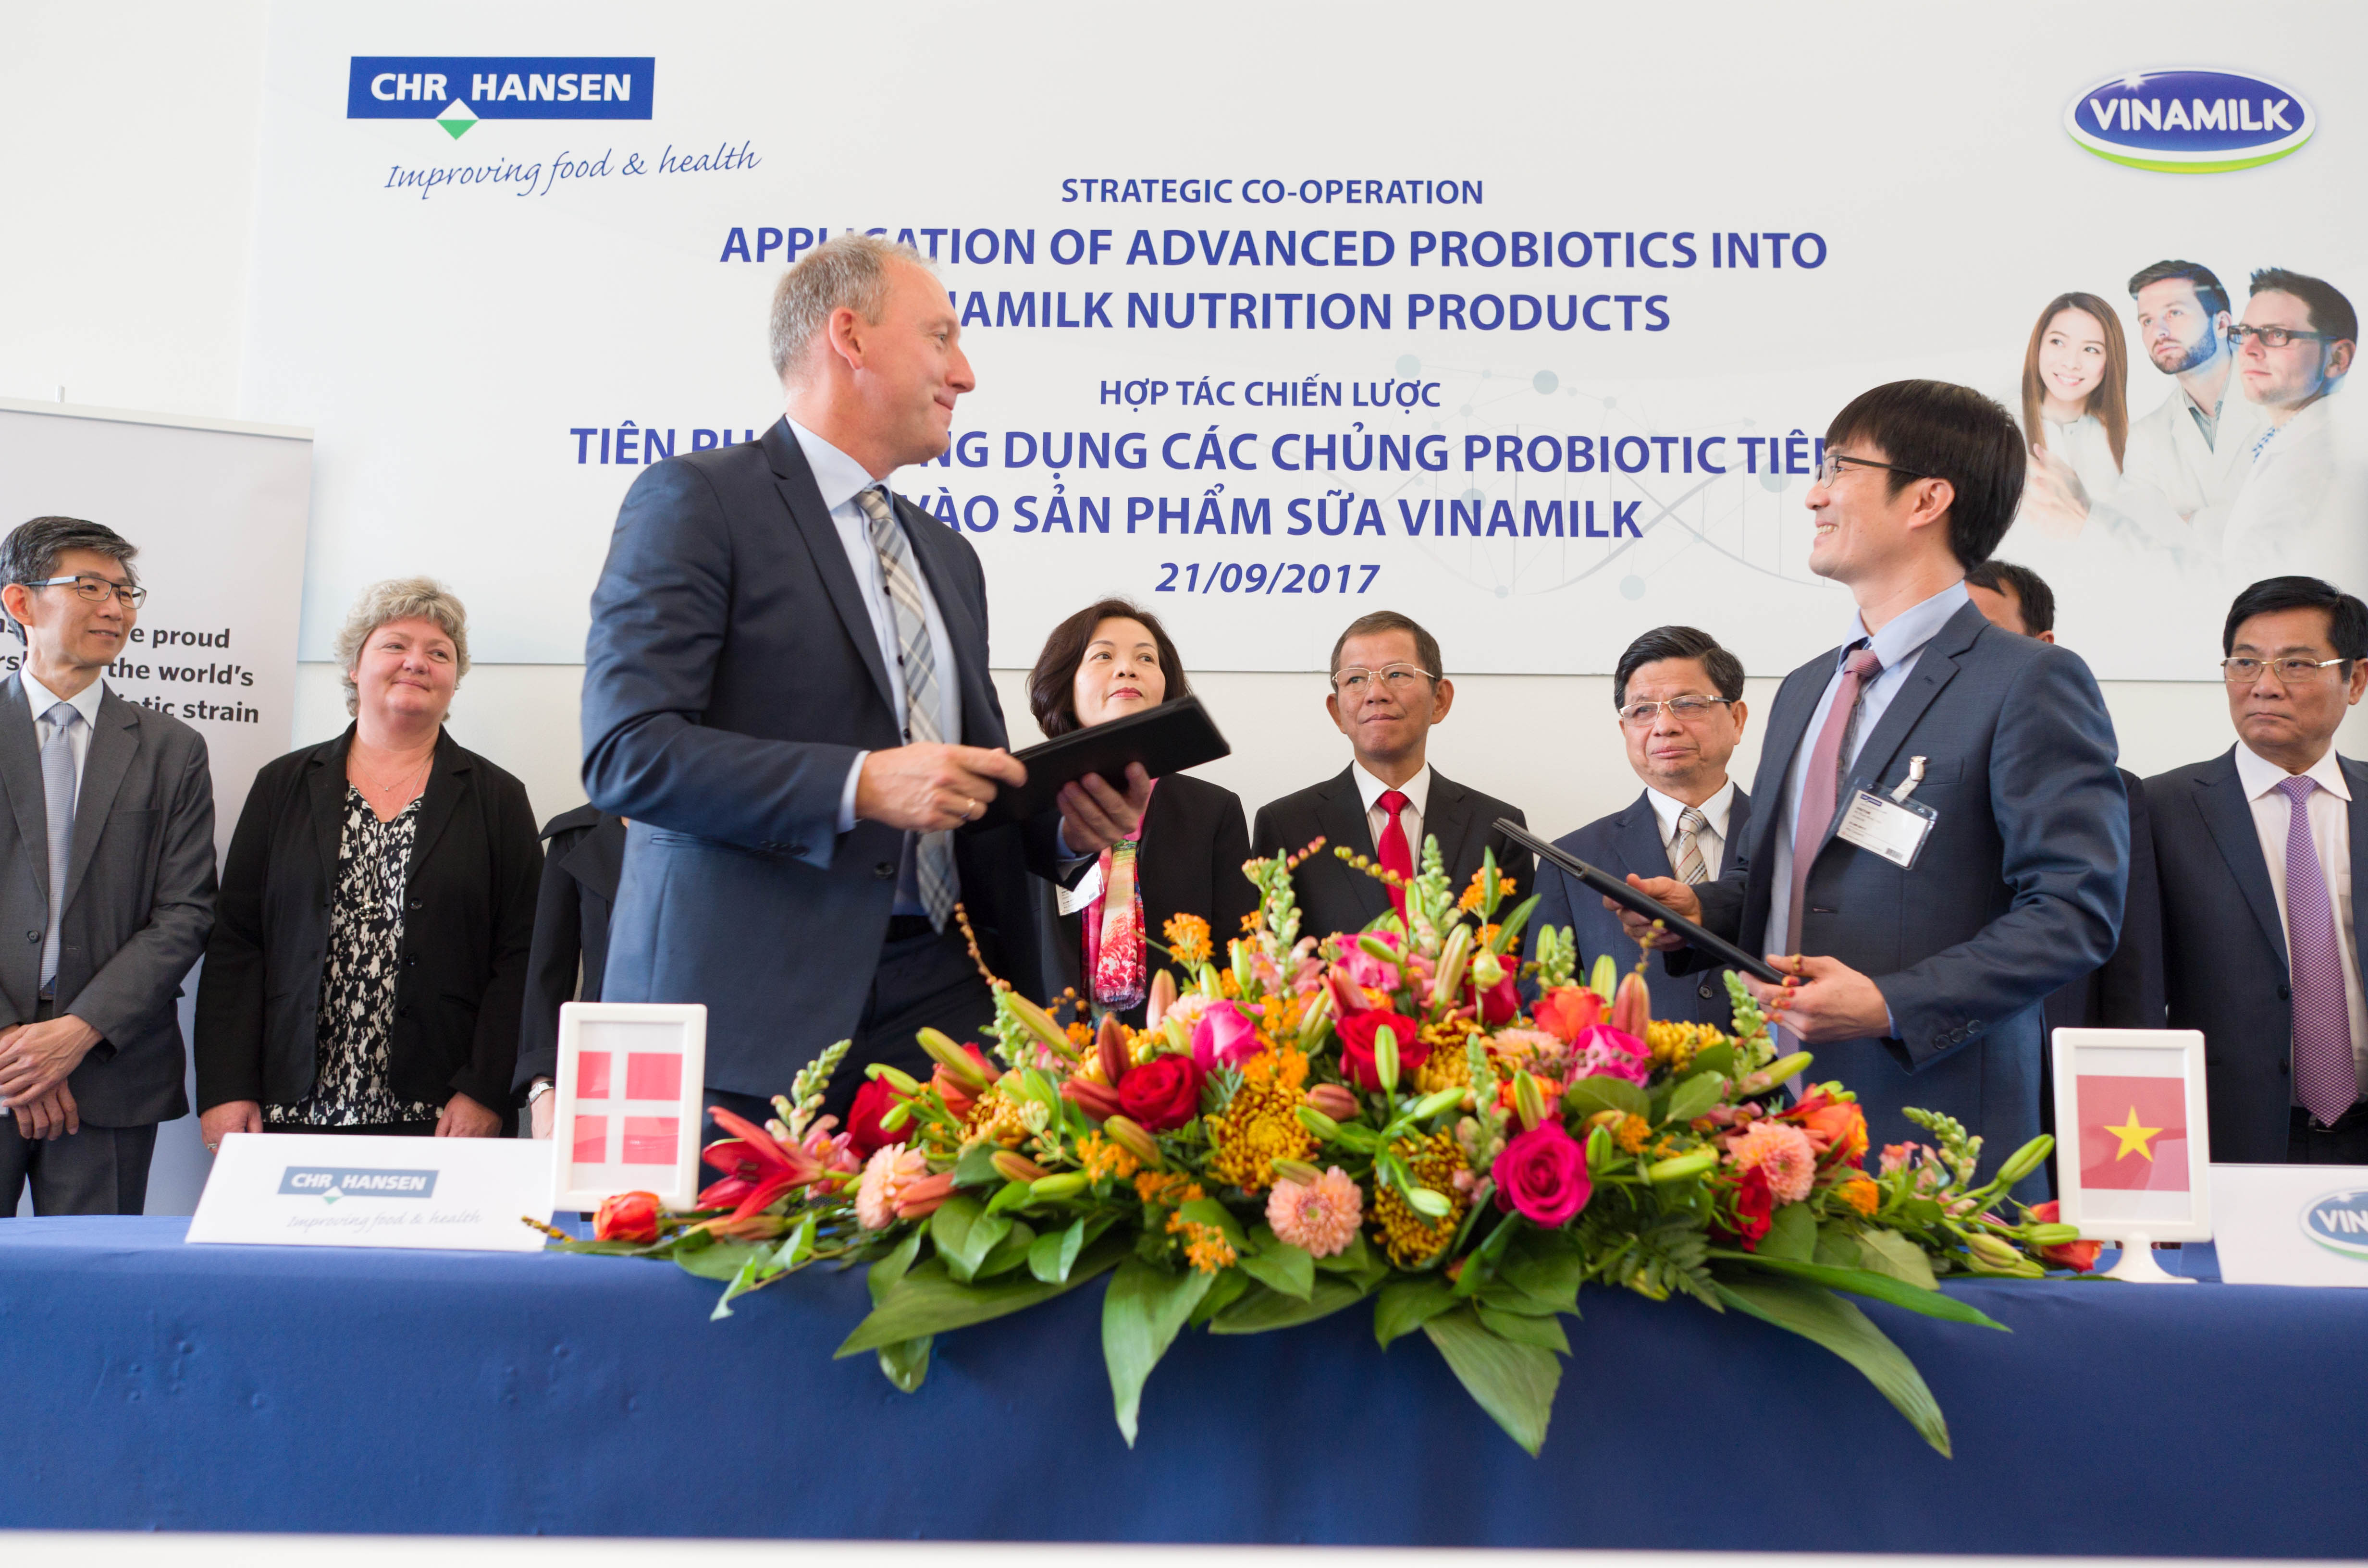 Ông Phan Minh Tiên, giám đốc điều hành marketing Vinamilk và ông Lasse Nagell, phó chủ tịch cấp cao Tập đoàn Chr.Hansen trao thỏa thuận hợp tác tại buổi lễ ký kết